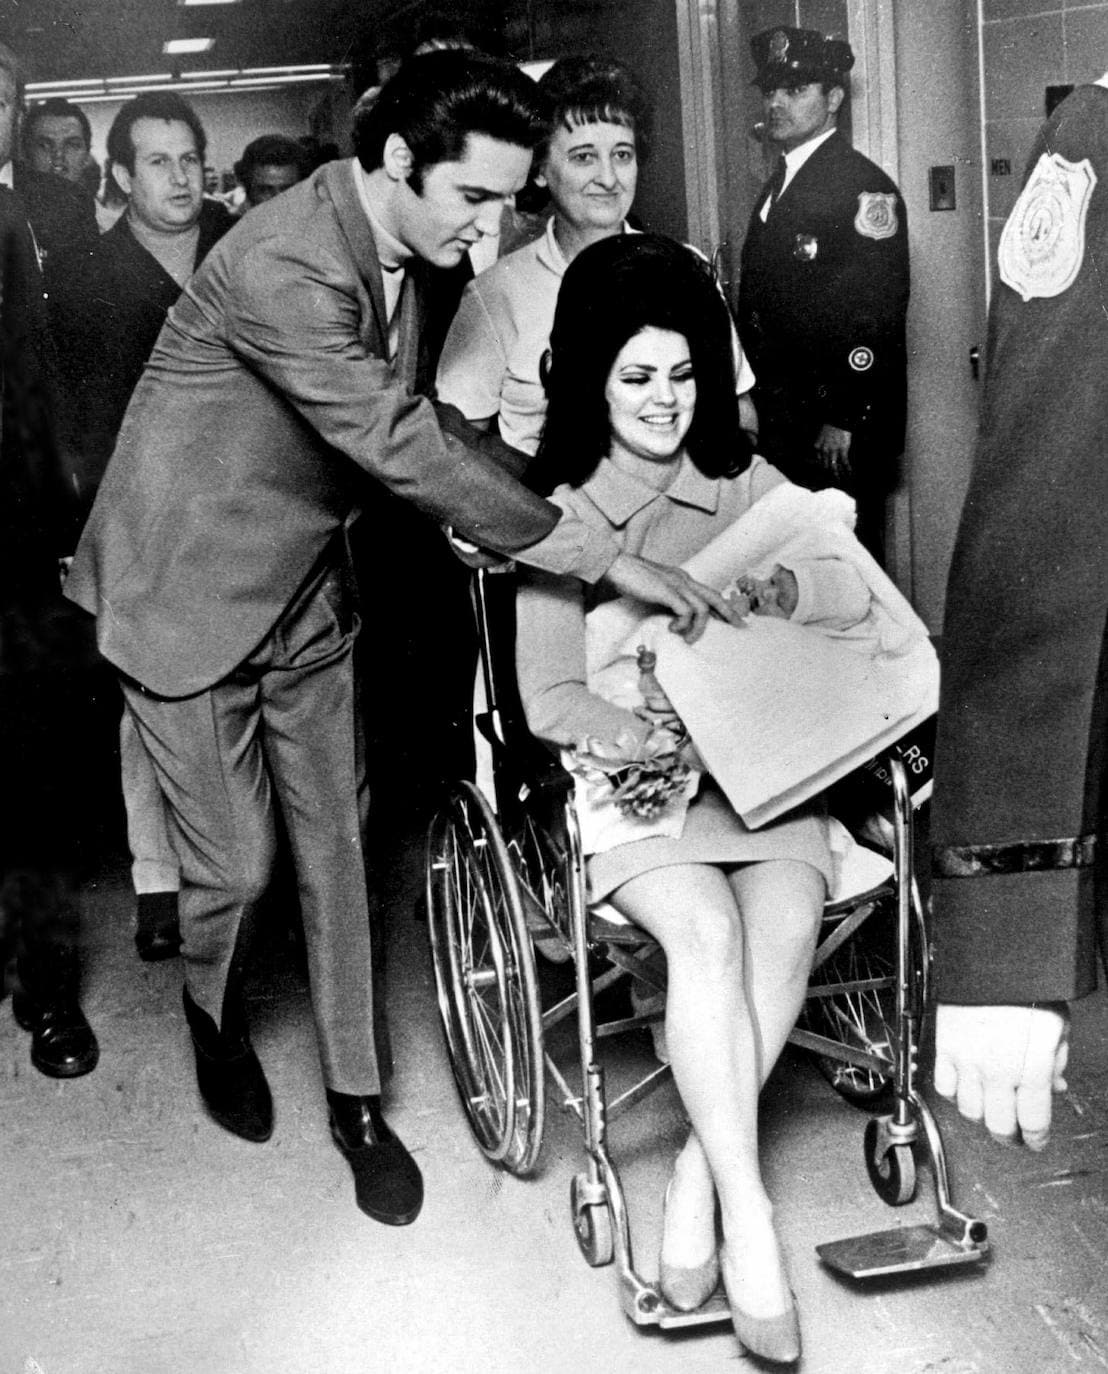 Lisa marie Presley nacía el 1 de febrero de 1968, exactamente nueve meses después de la boda de sus padres, Elvis y Priscilla, quienes, según la autobiografía de esta, no mantuvieron relaciones sexuales hasta ser marido y mujer